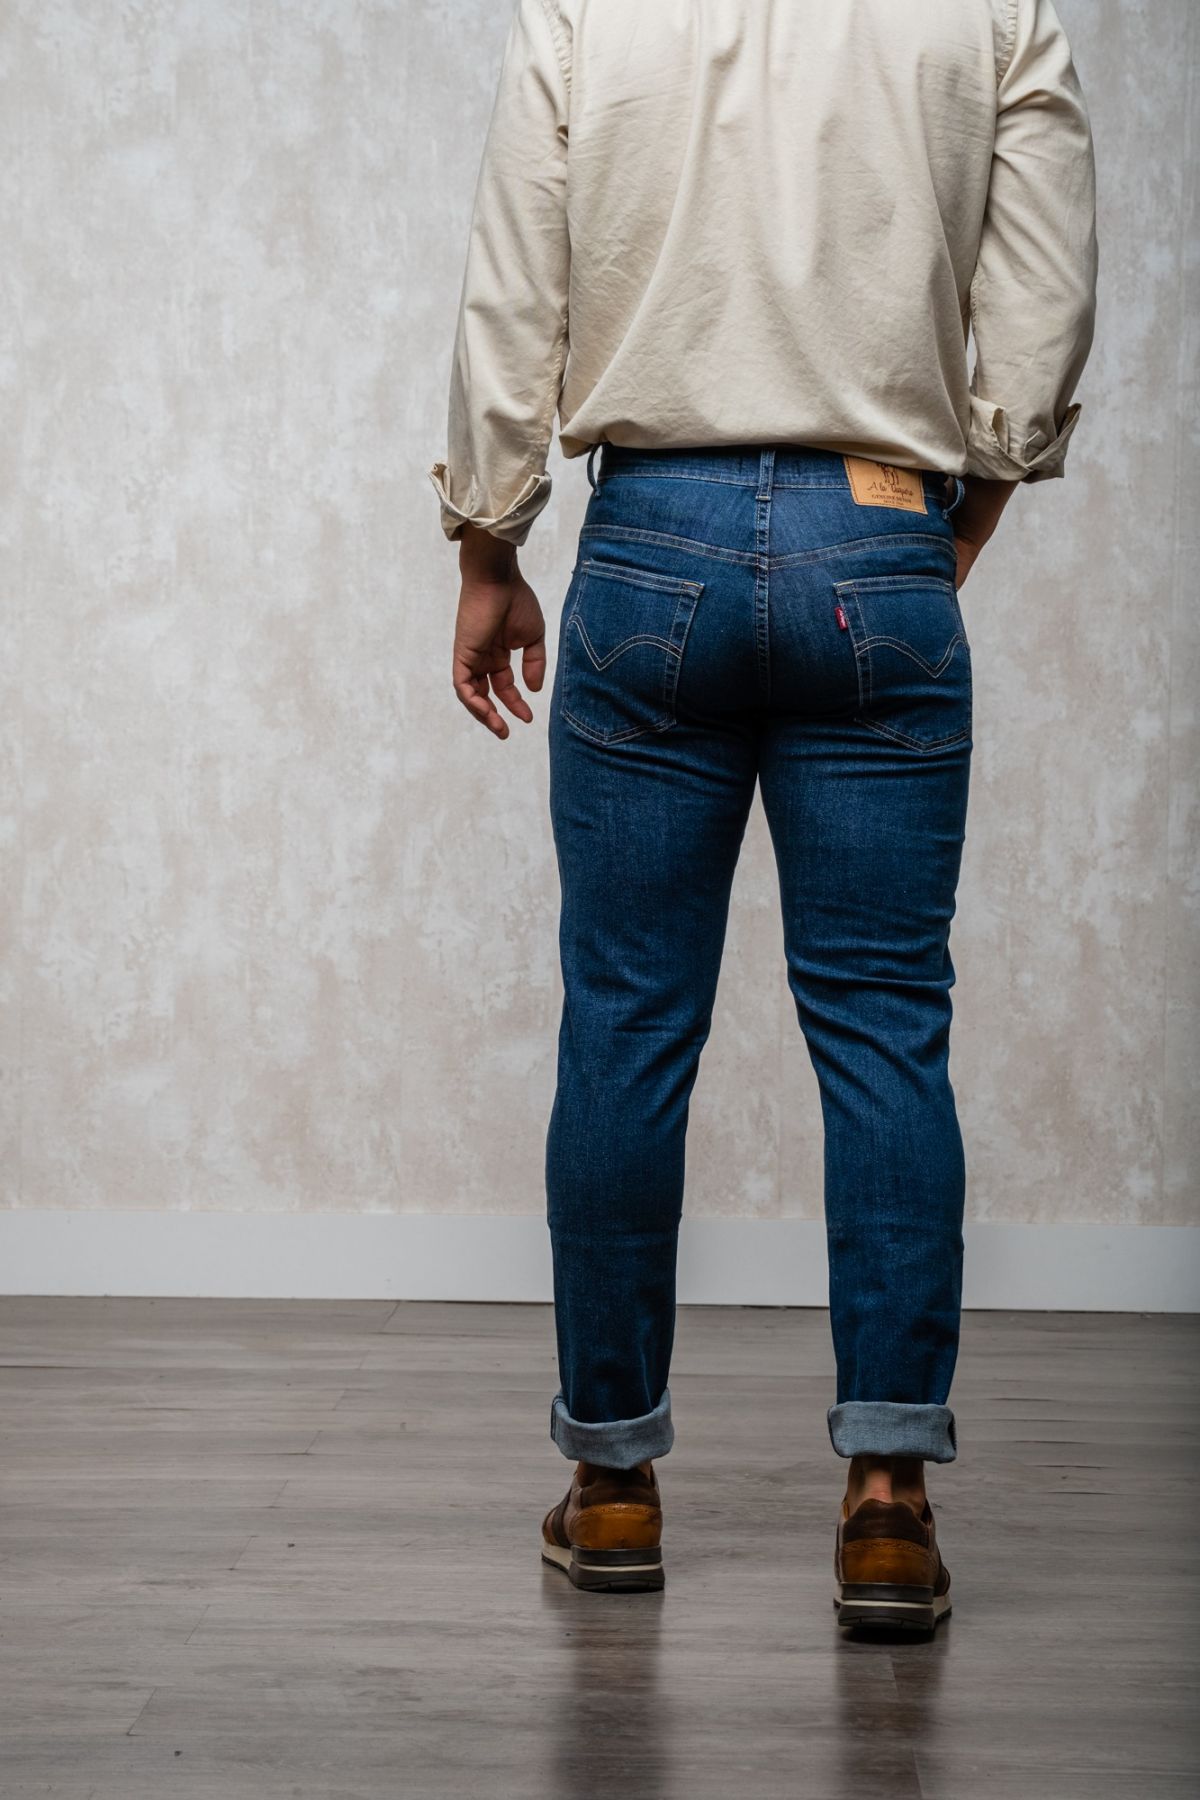 Los pantalones vaqueros de patrón regular son una opción clásica y versátil para cualquier guardarropa. Estos pantalones están diseñados para tener un ajuste regular en la cintura y las piernas, lo que los hace ideales para aquellos que buscan una opción 